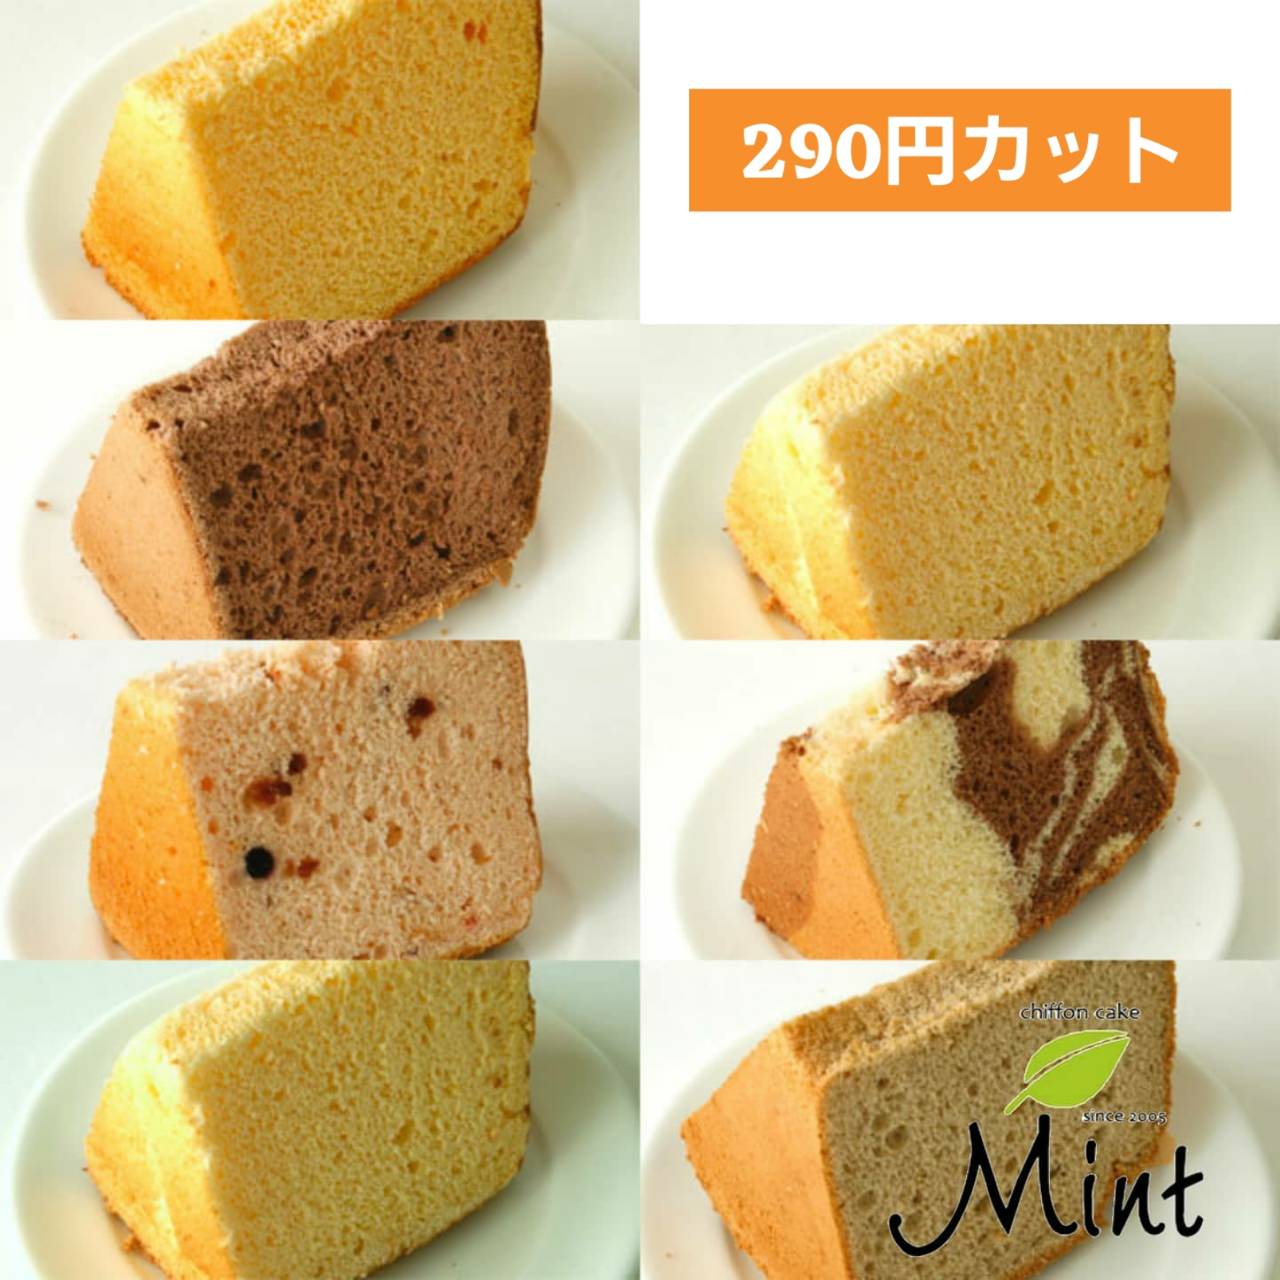 シフォンケーキ Mint テイクアウト洲本